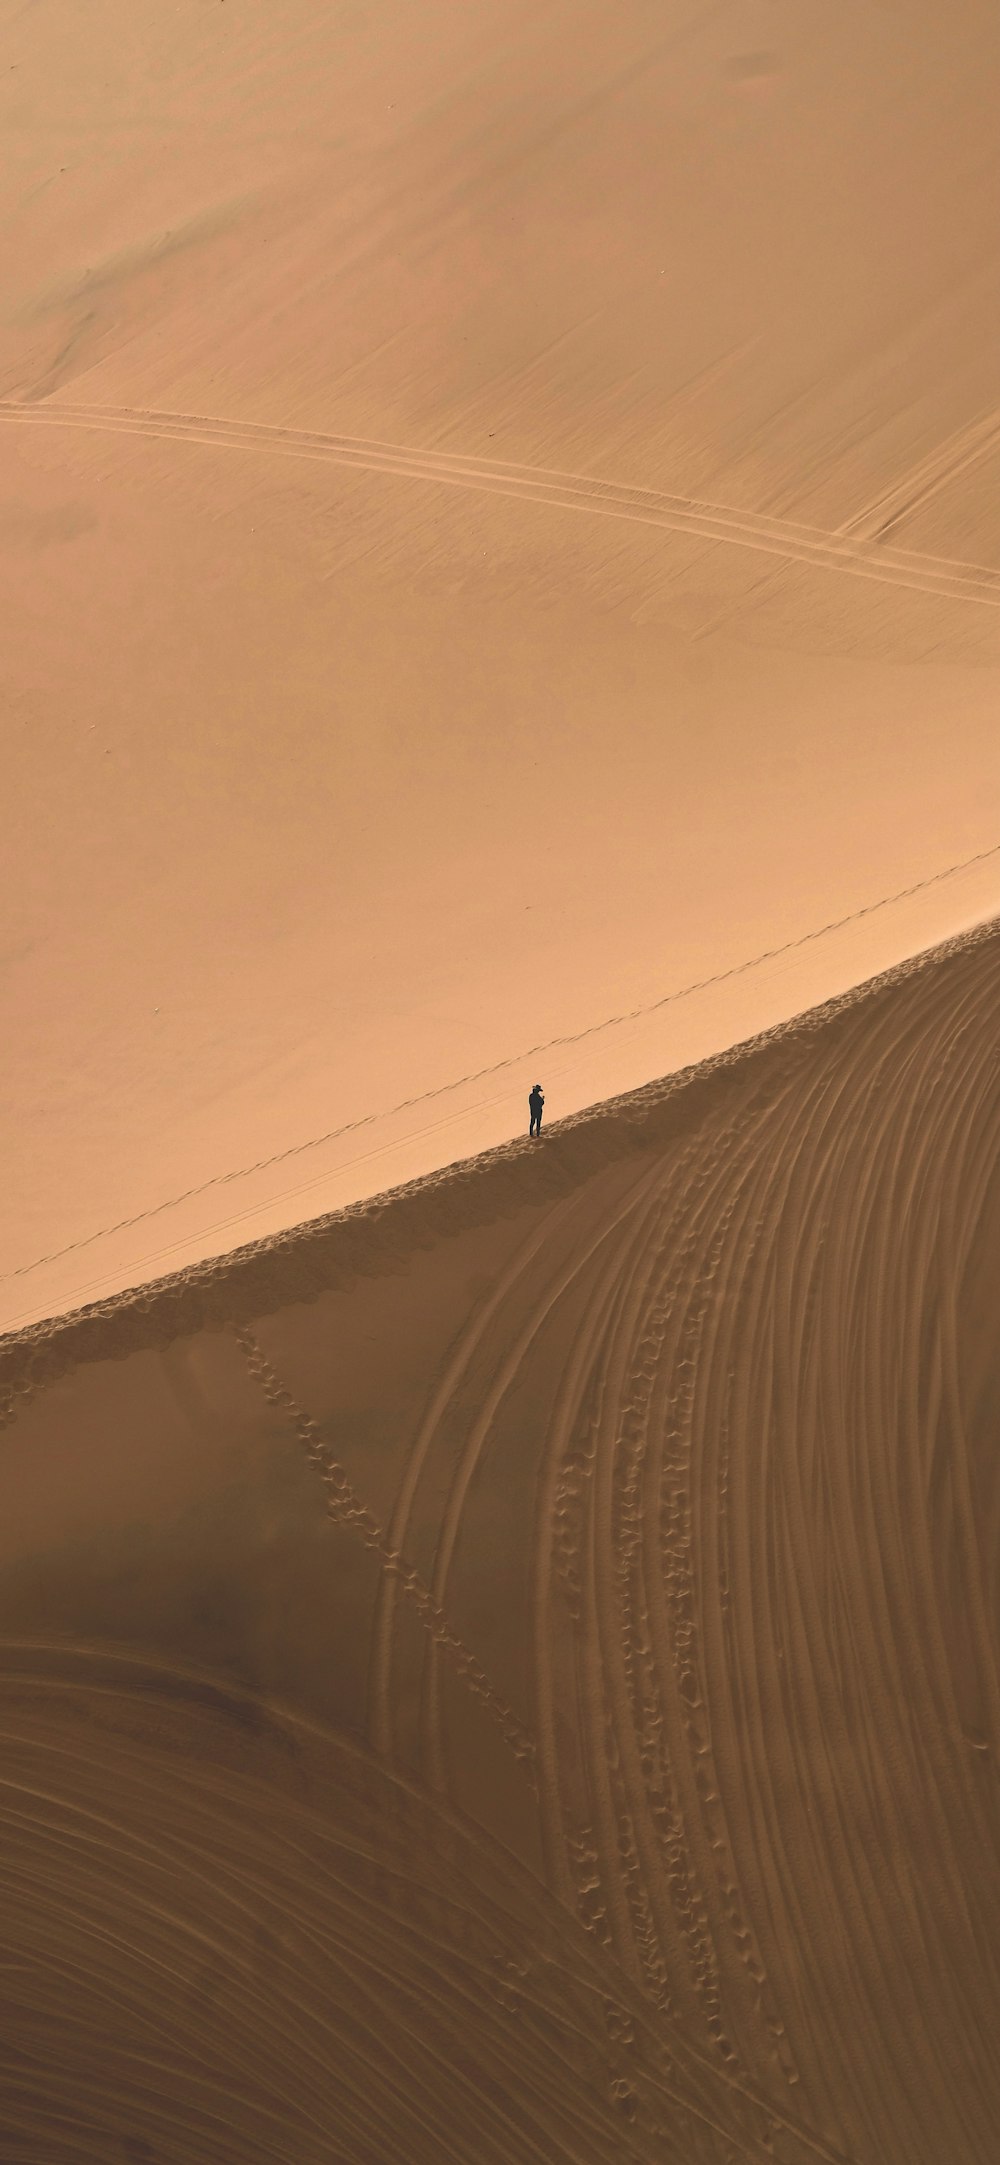 a lone person walking across a desert landscape